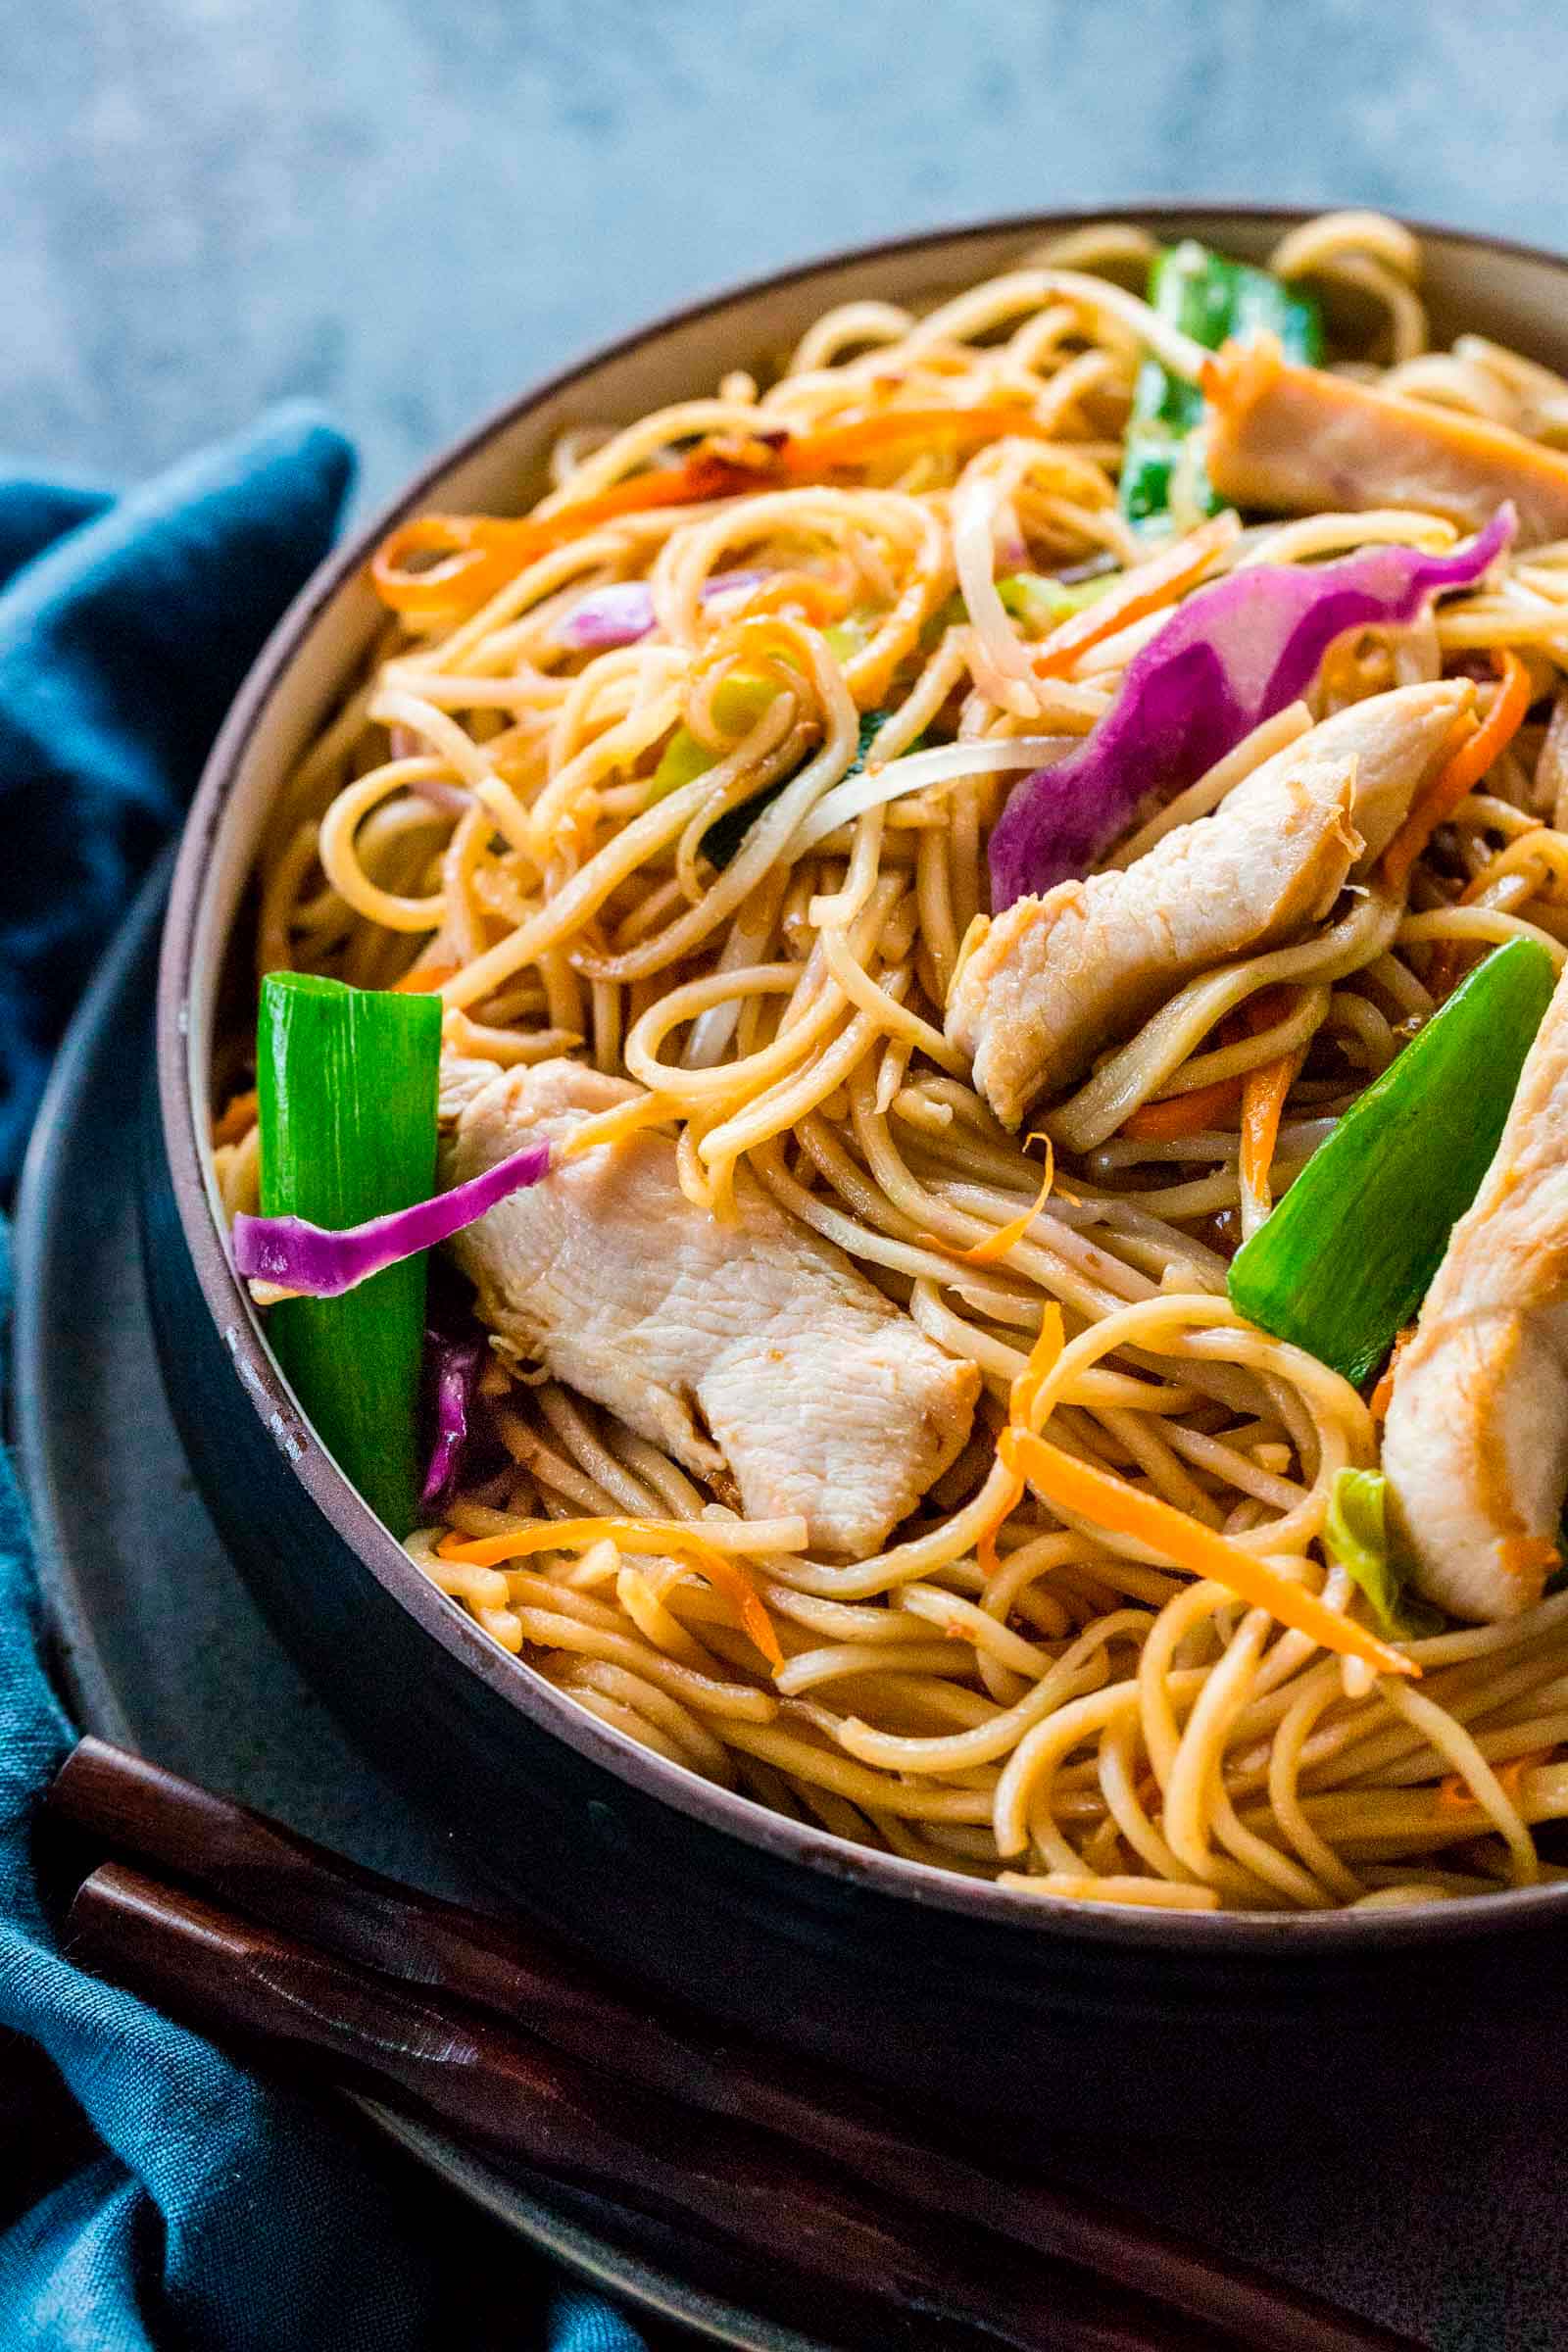 Receta-fideos-Chow-mein-crujientes-con-pollo-y-verduras